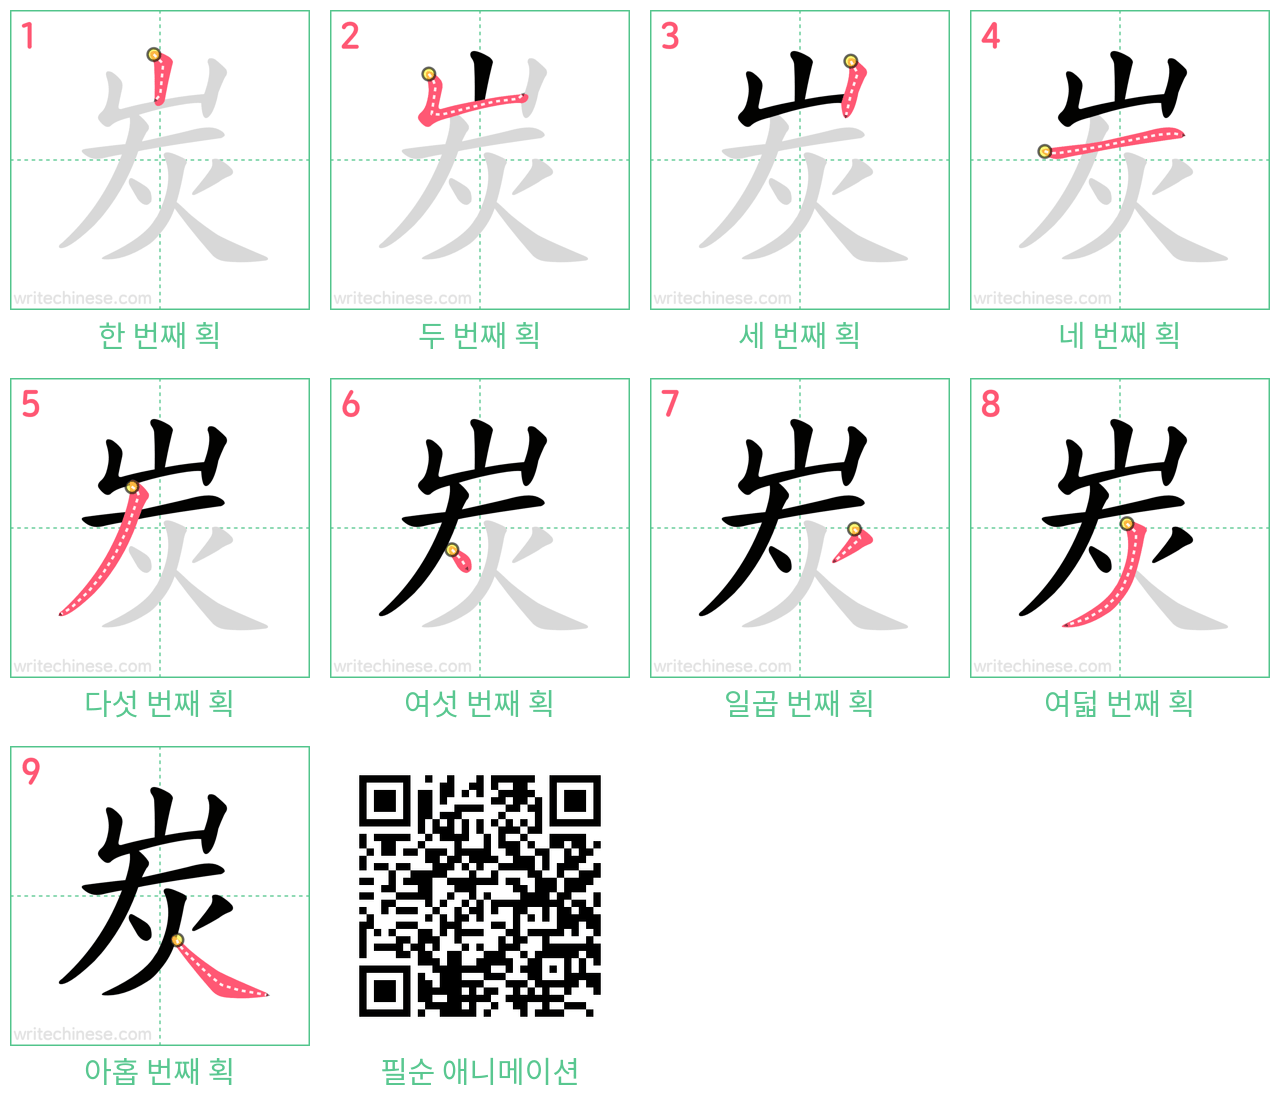 炭 step-by-step stroke order diagrams